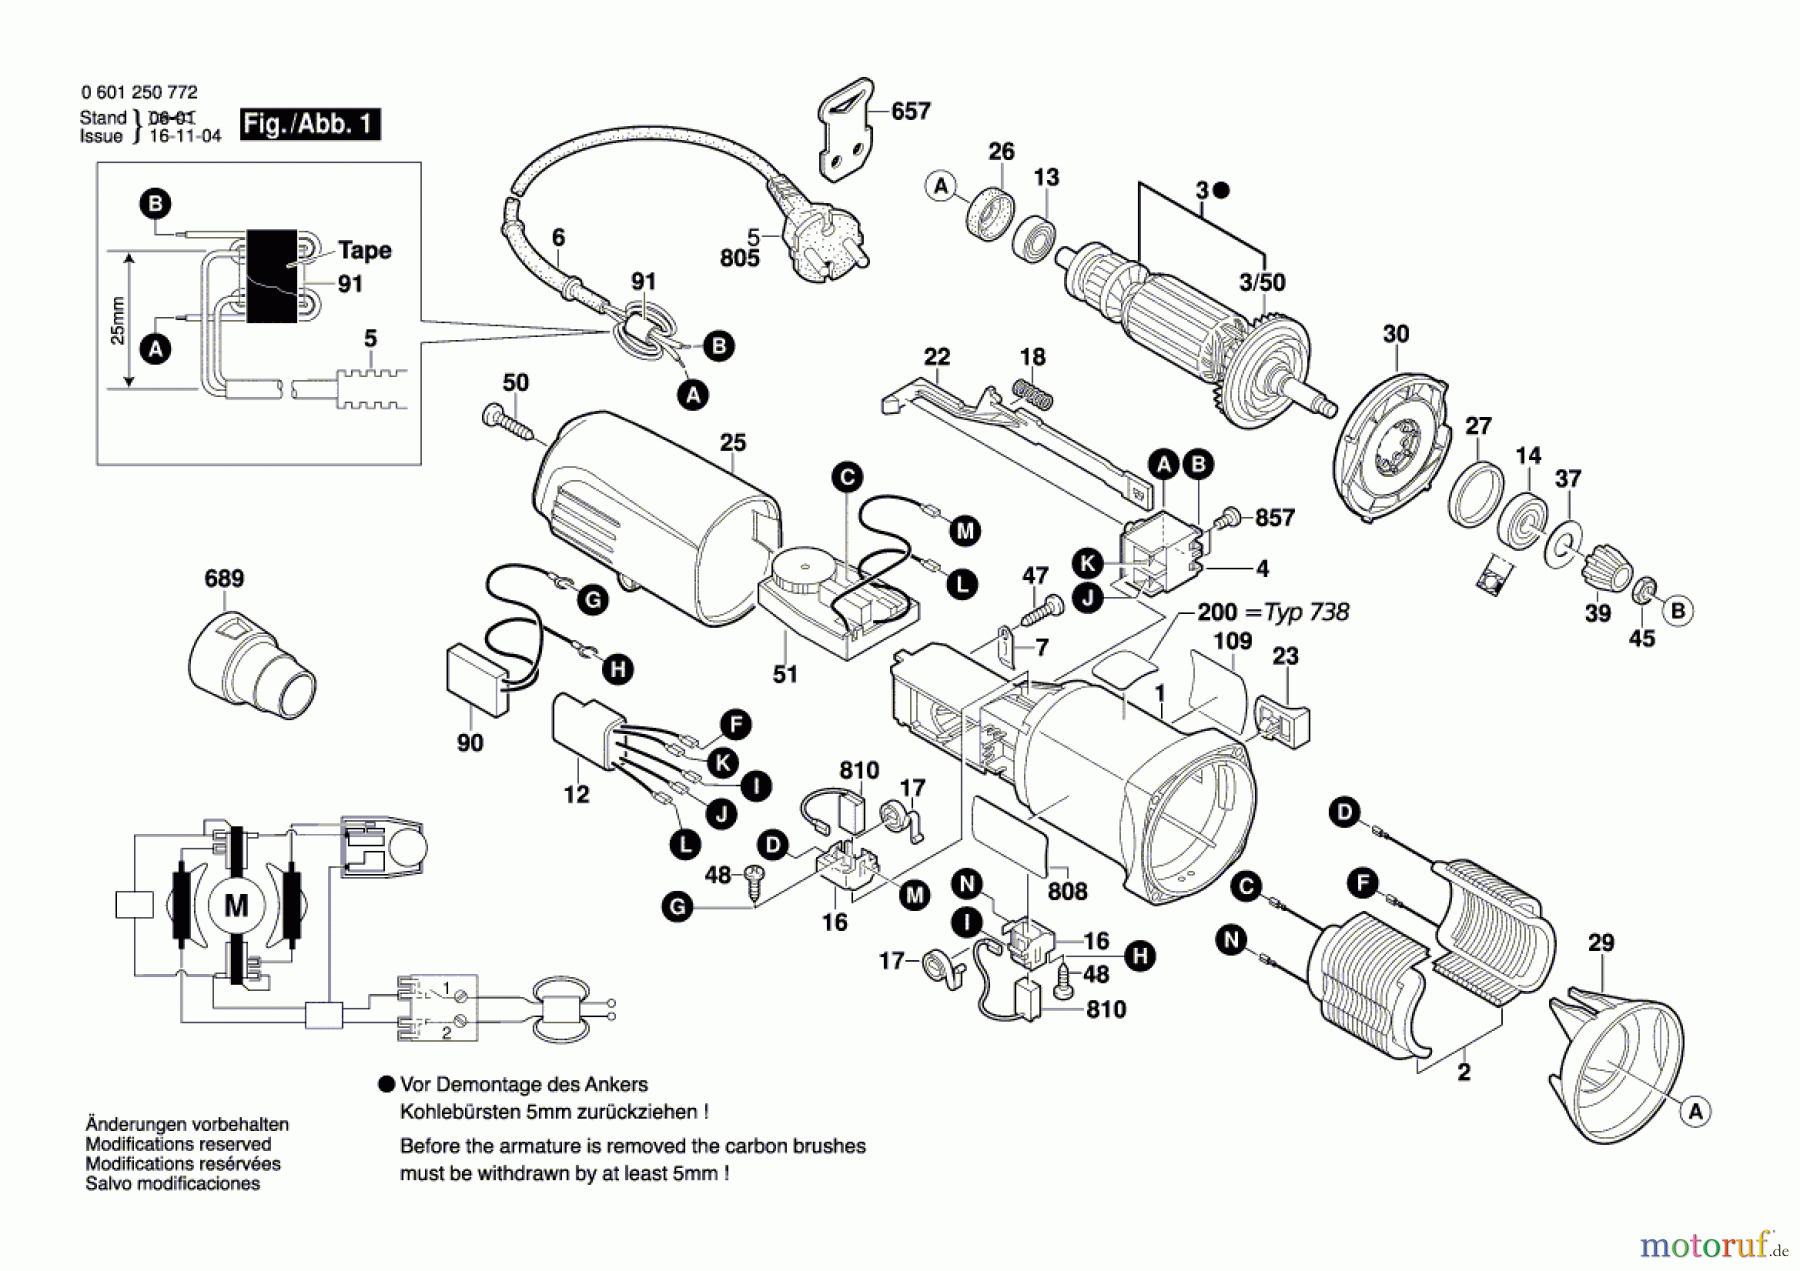  Bosch Werkzeug Exzenterschleifer GEX 150 TURBO Seite 1